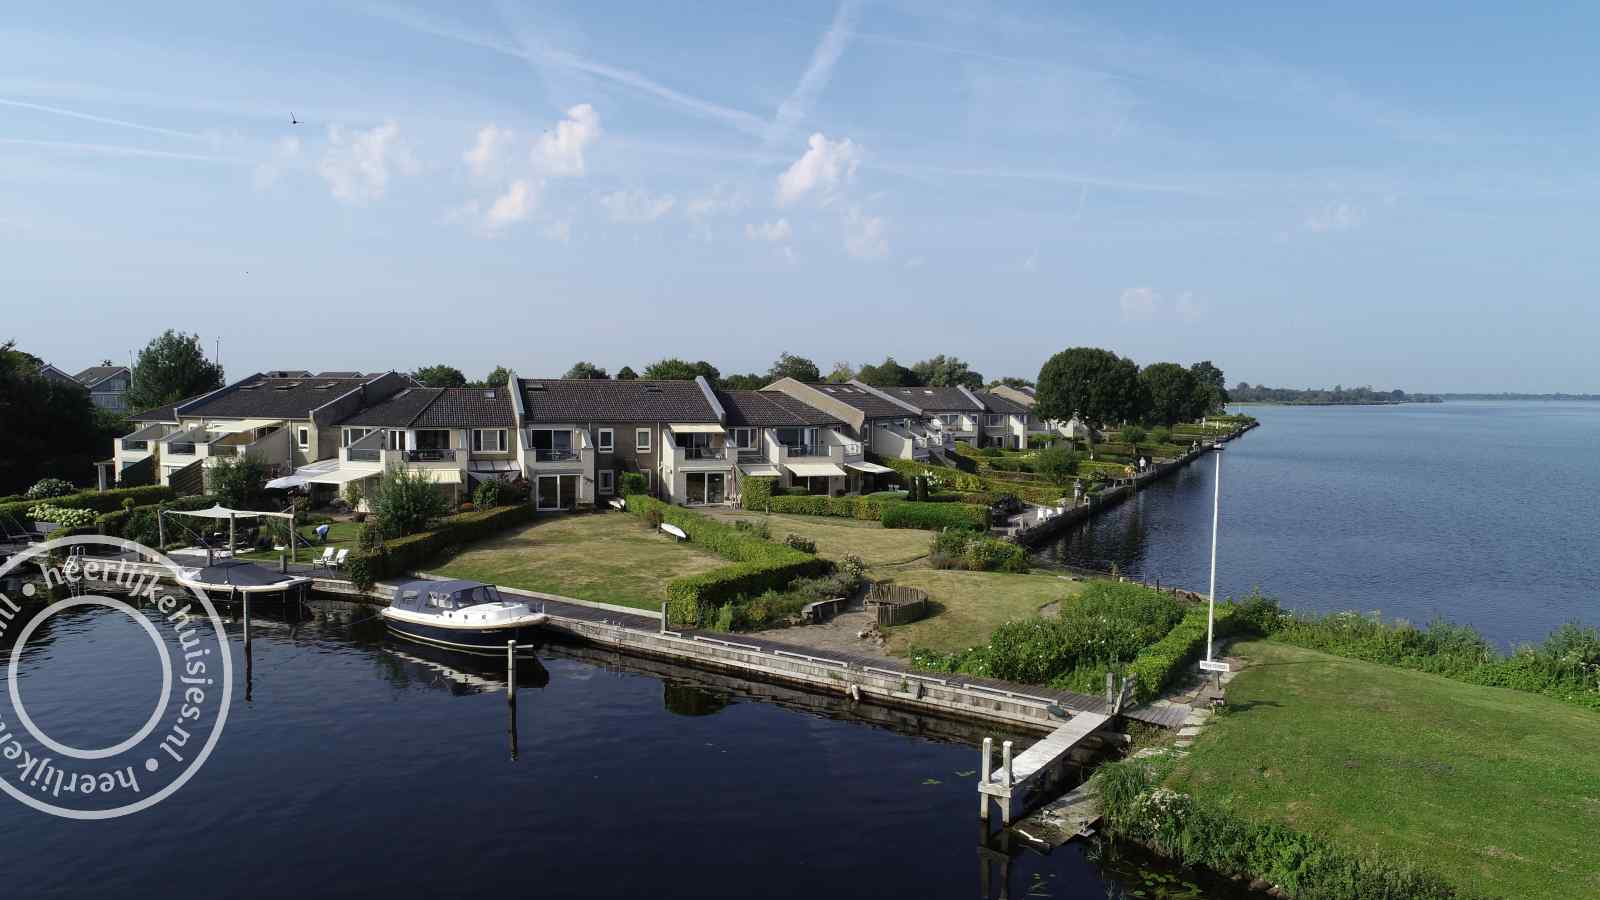 Perfect gelegen 4P appartement nabij Giethoorn met fantastisch uitzicht - Nederland - Europa - Giethoorn